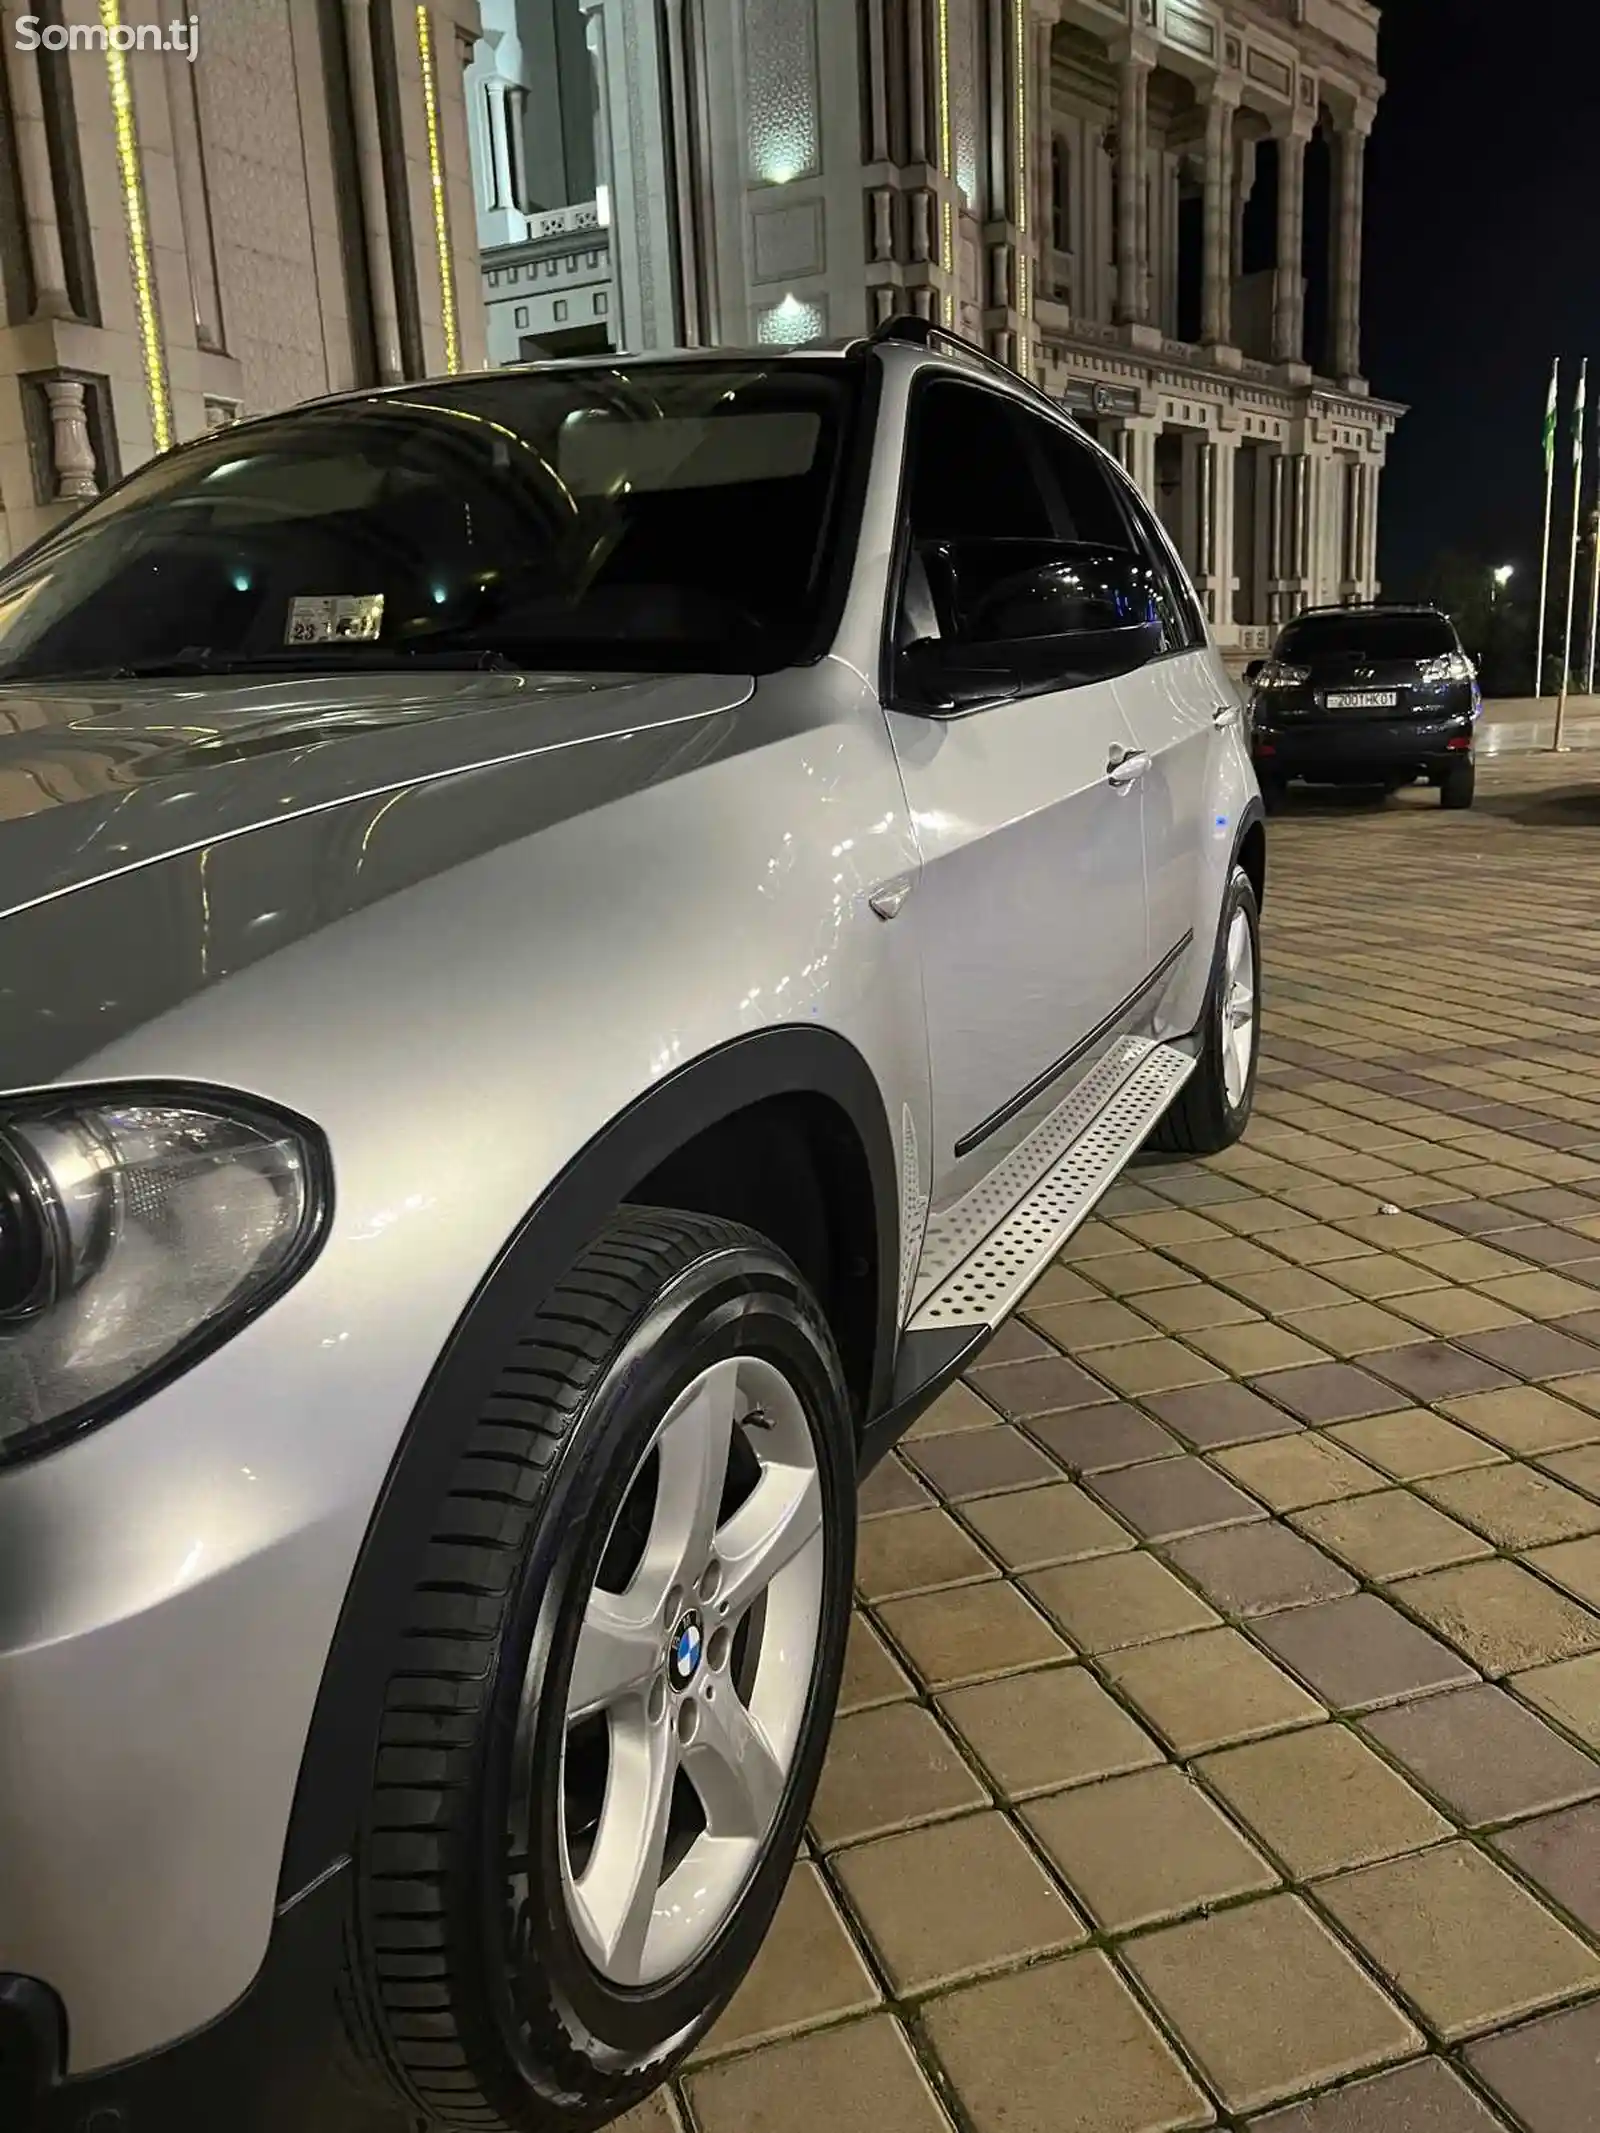 BMW X5, 2010-5